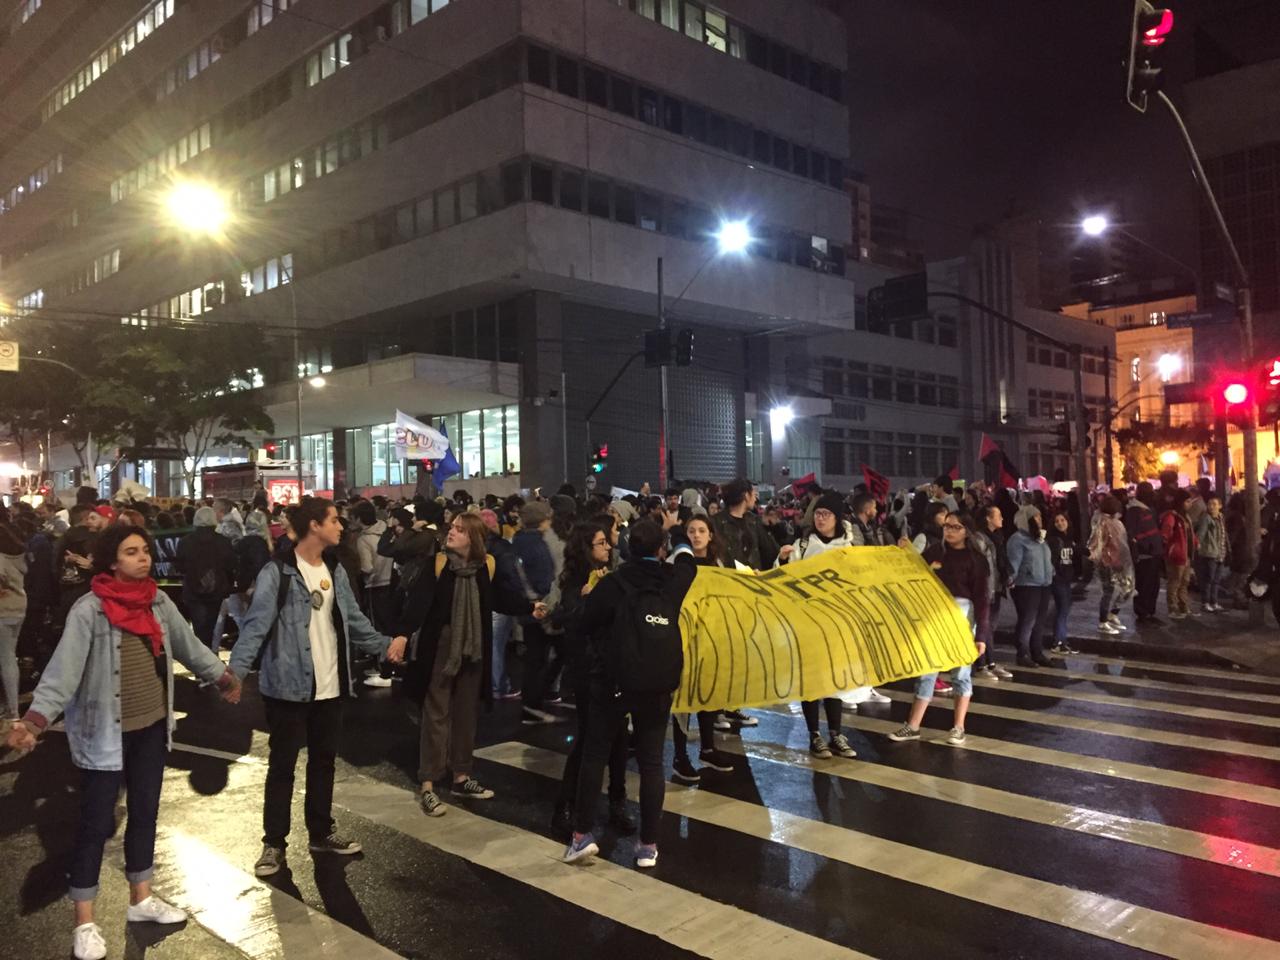  Cerca de 6 mil estudantes protestam pela educação em Curitiba, segundo organizadores